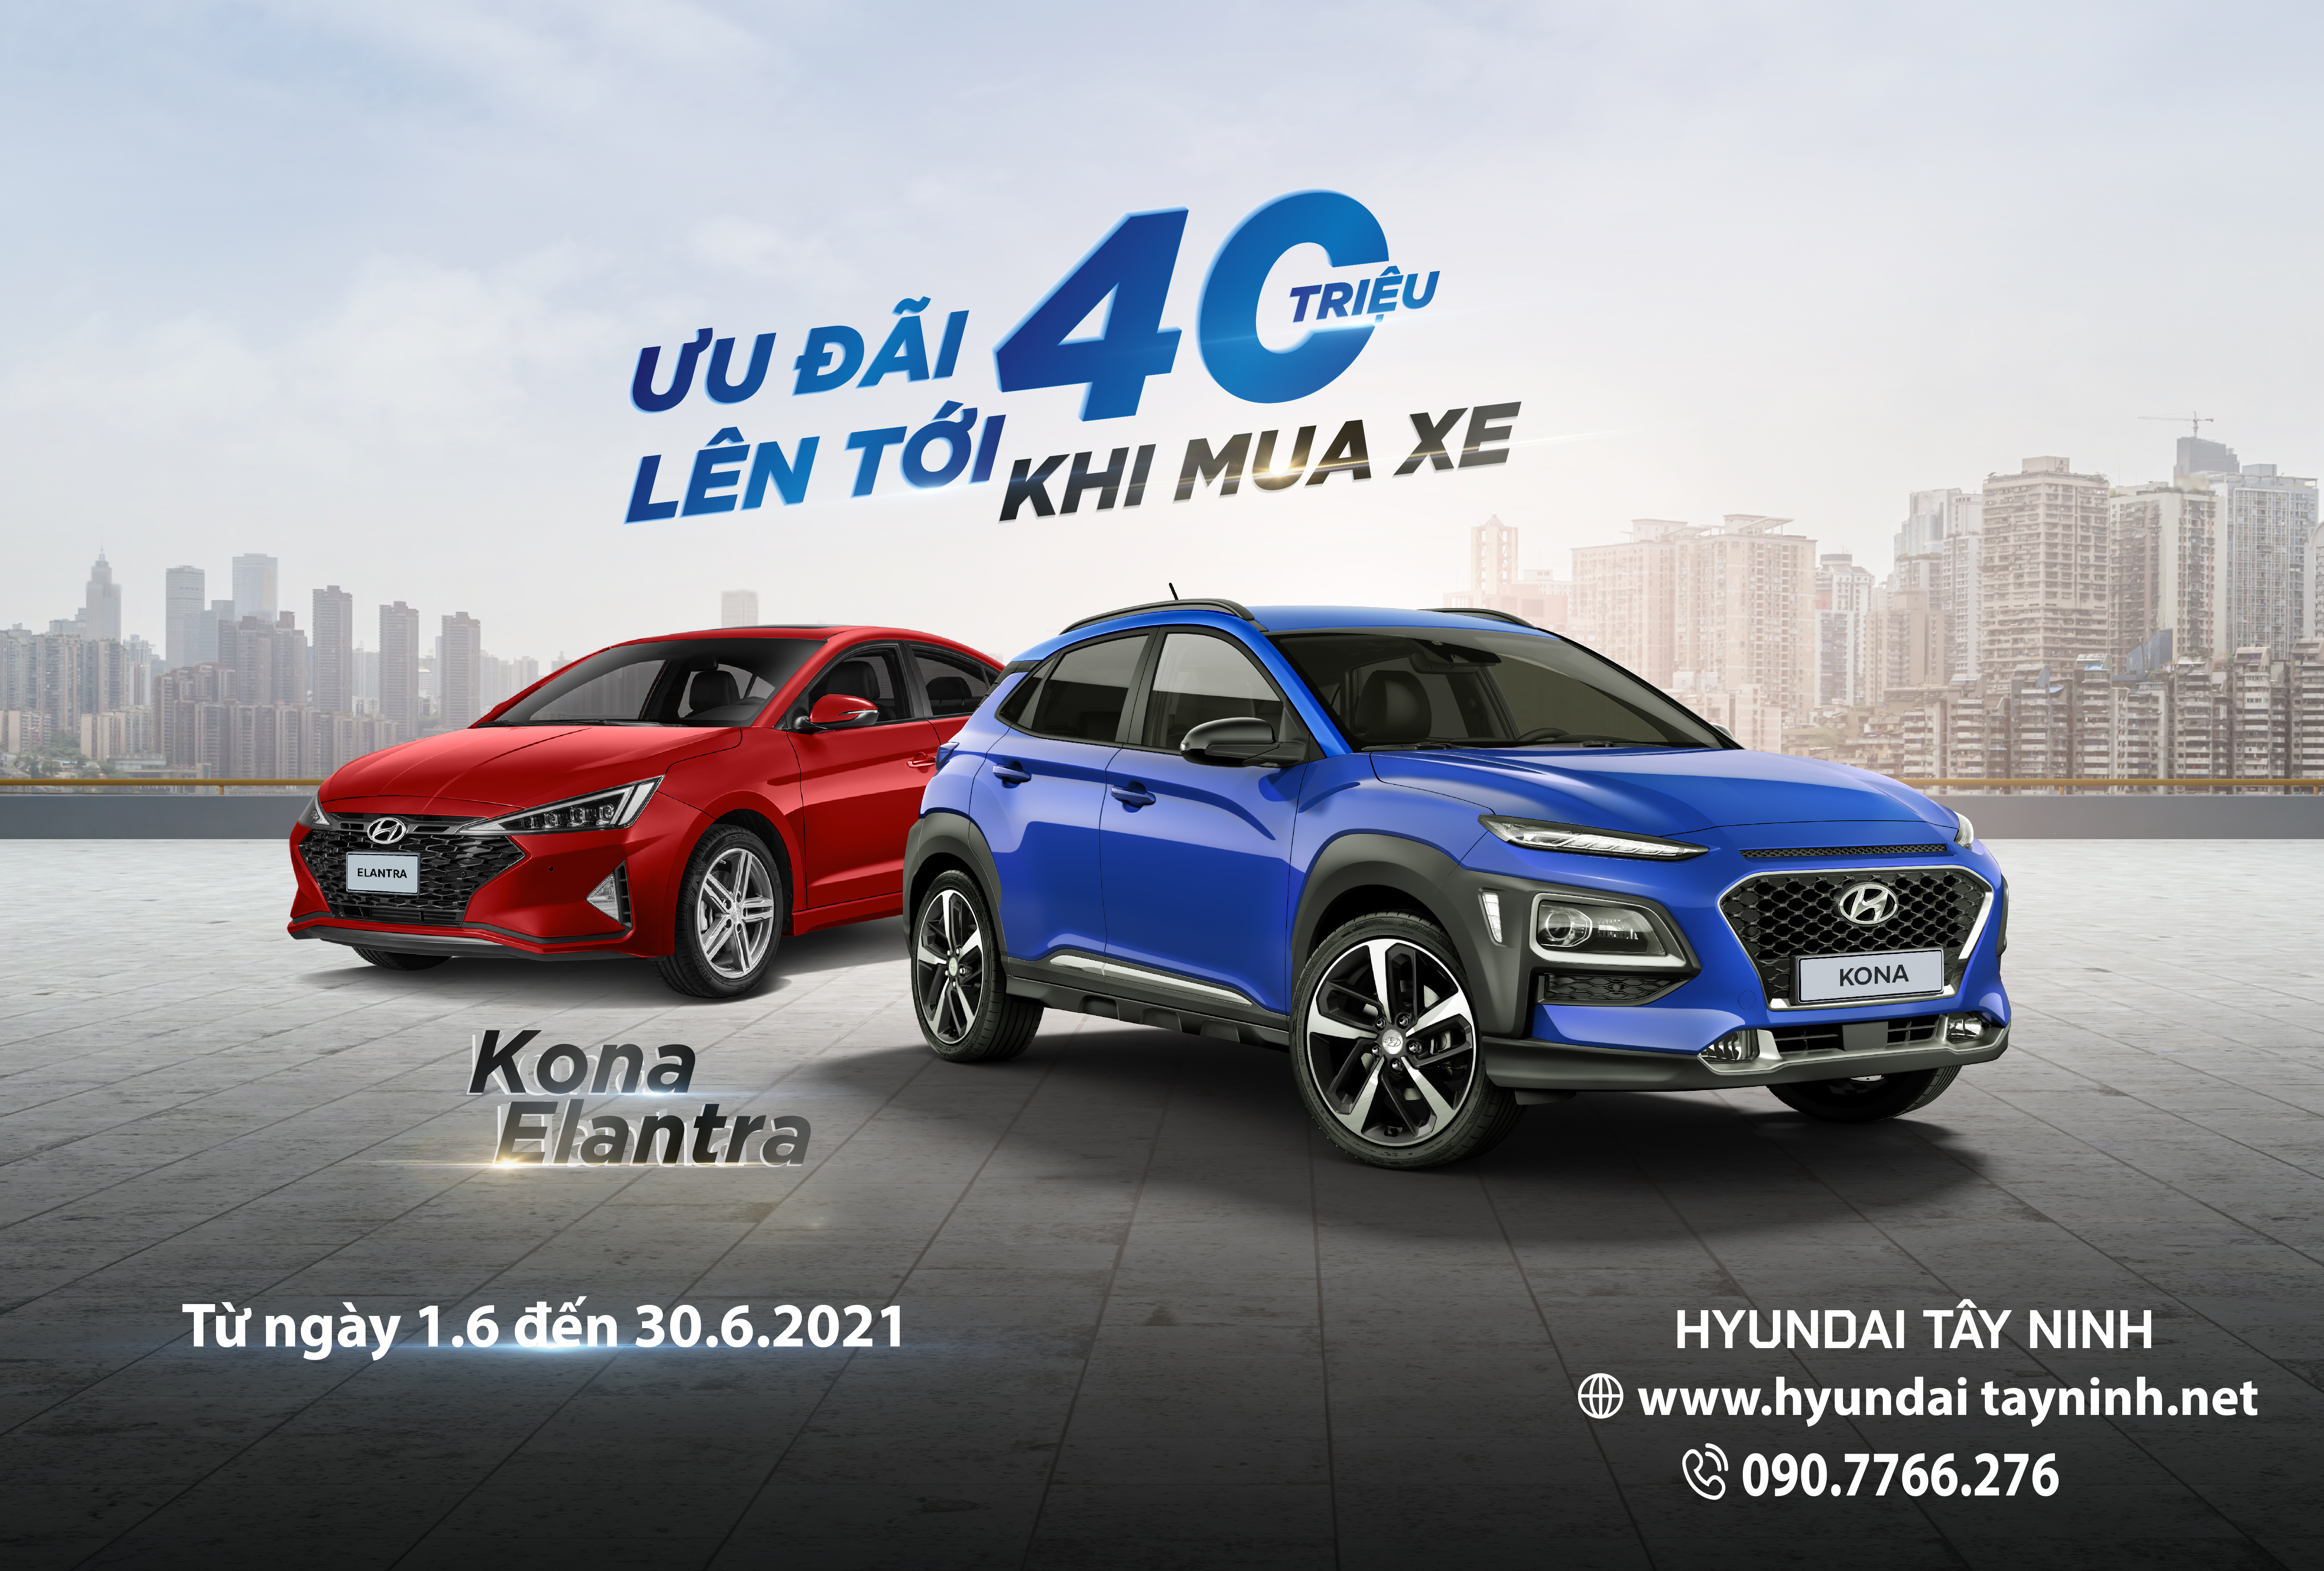 Hyundai KONA và Elantra với mức ưu đãi lên đến 40 triệu đồng